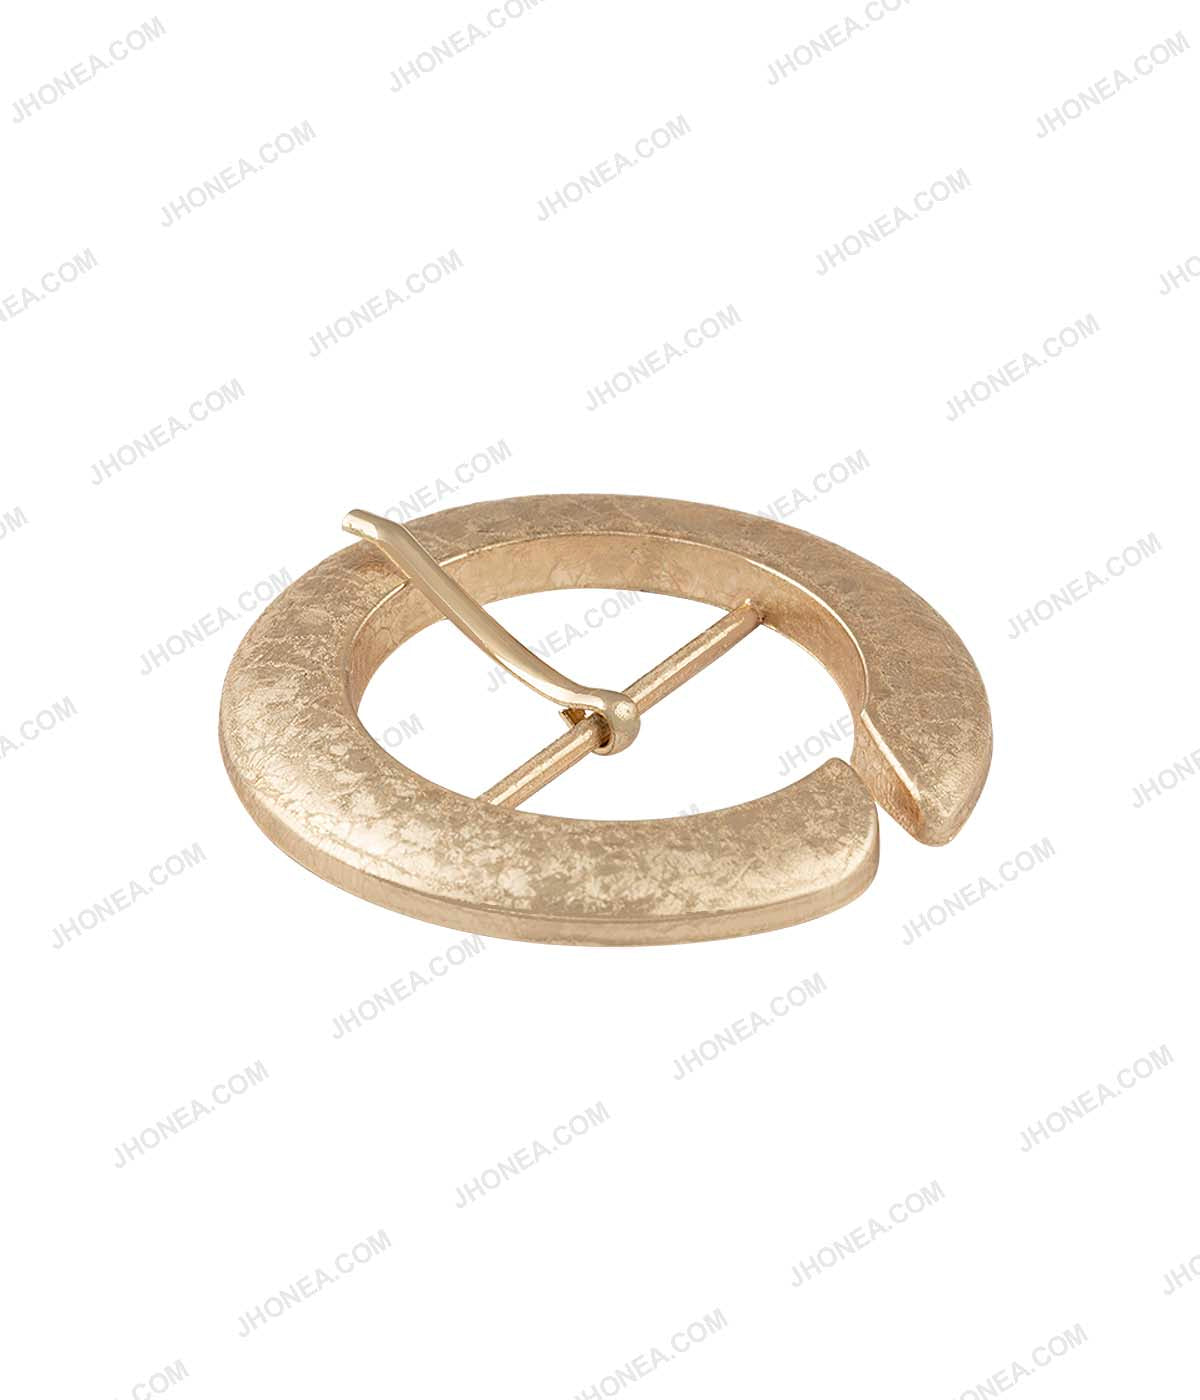 Luxurious Shiny Light Gold Metallic Texture Prong Belt Buckle